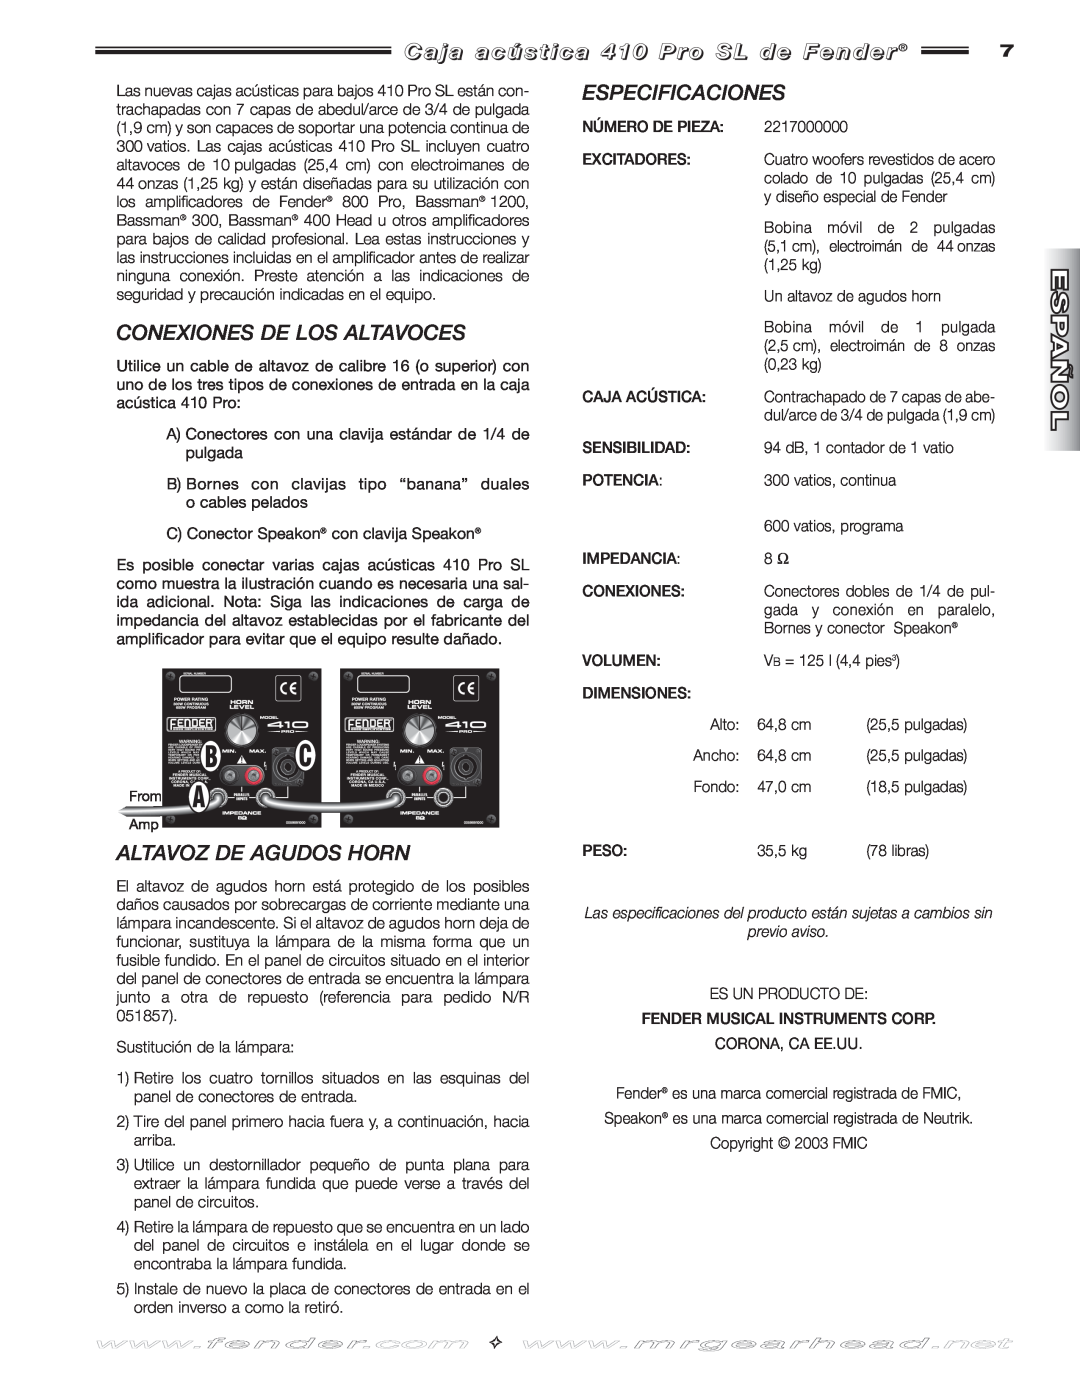 Fender 410 PRO manual Conexiones De Los Altavoces, Altavoz De Agudos Horn, Especificaciones, previo aviso 